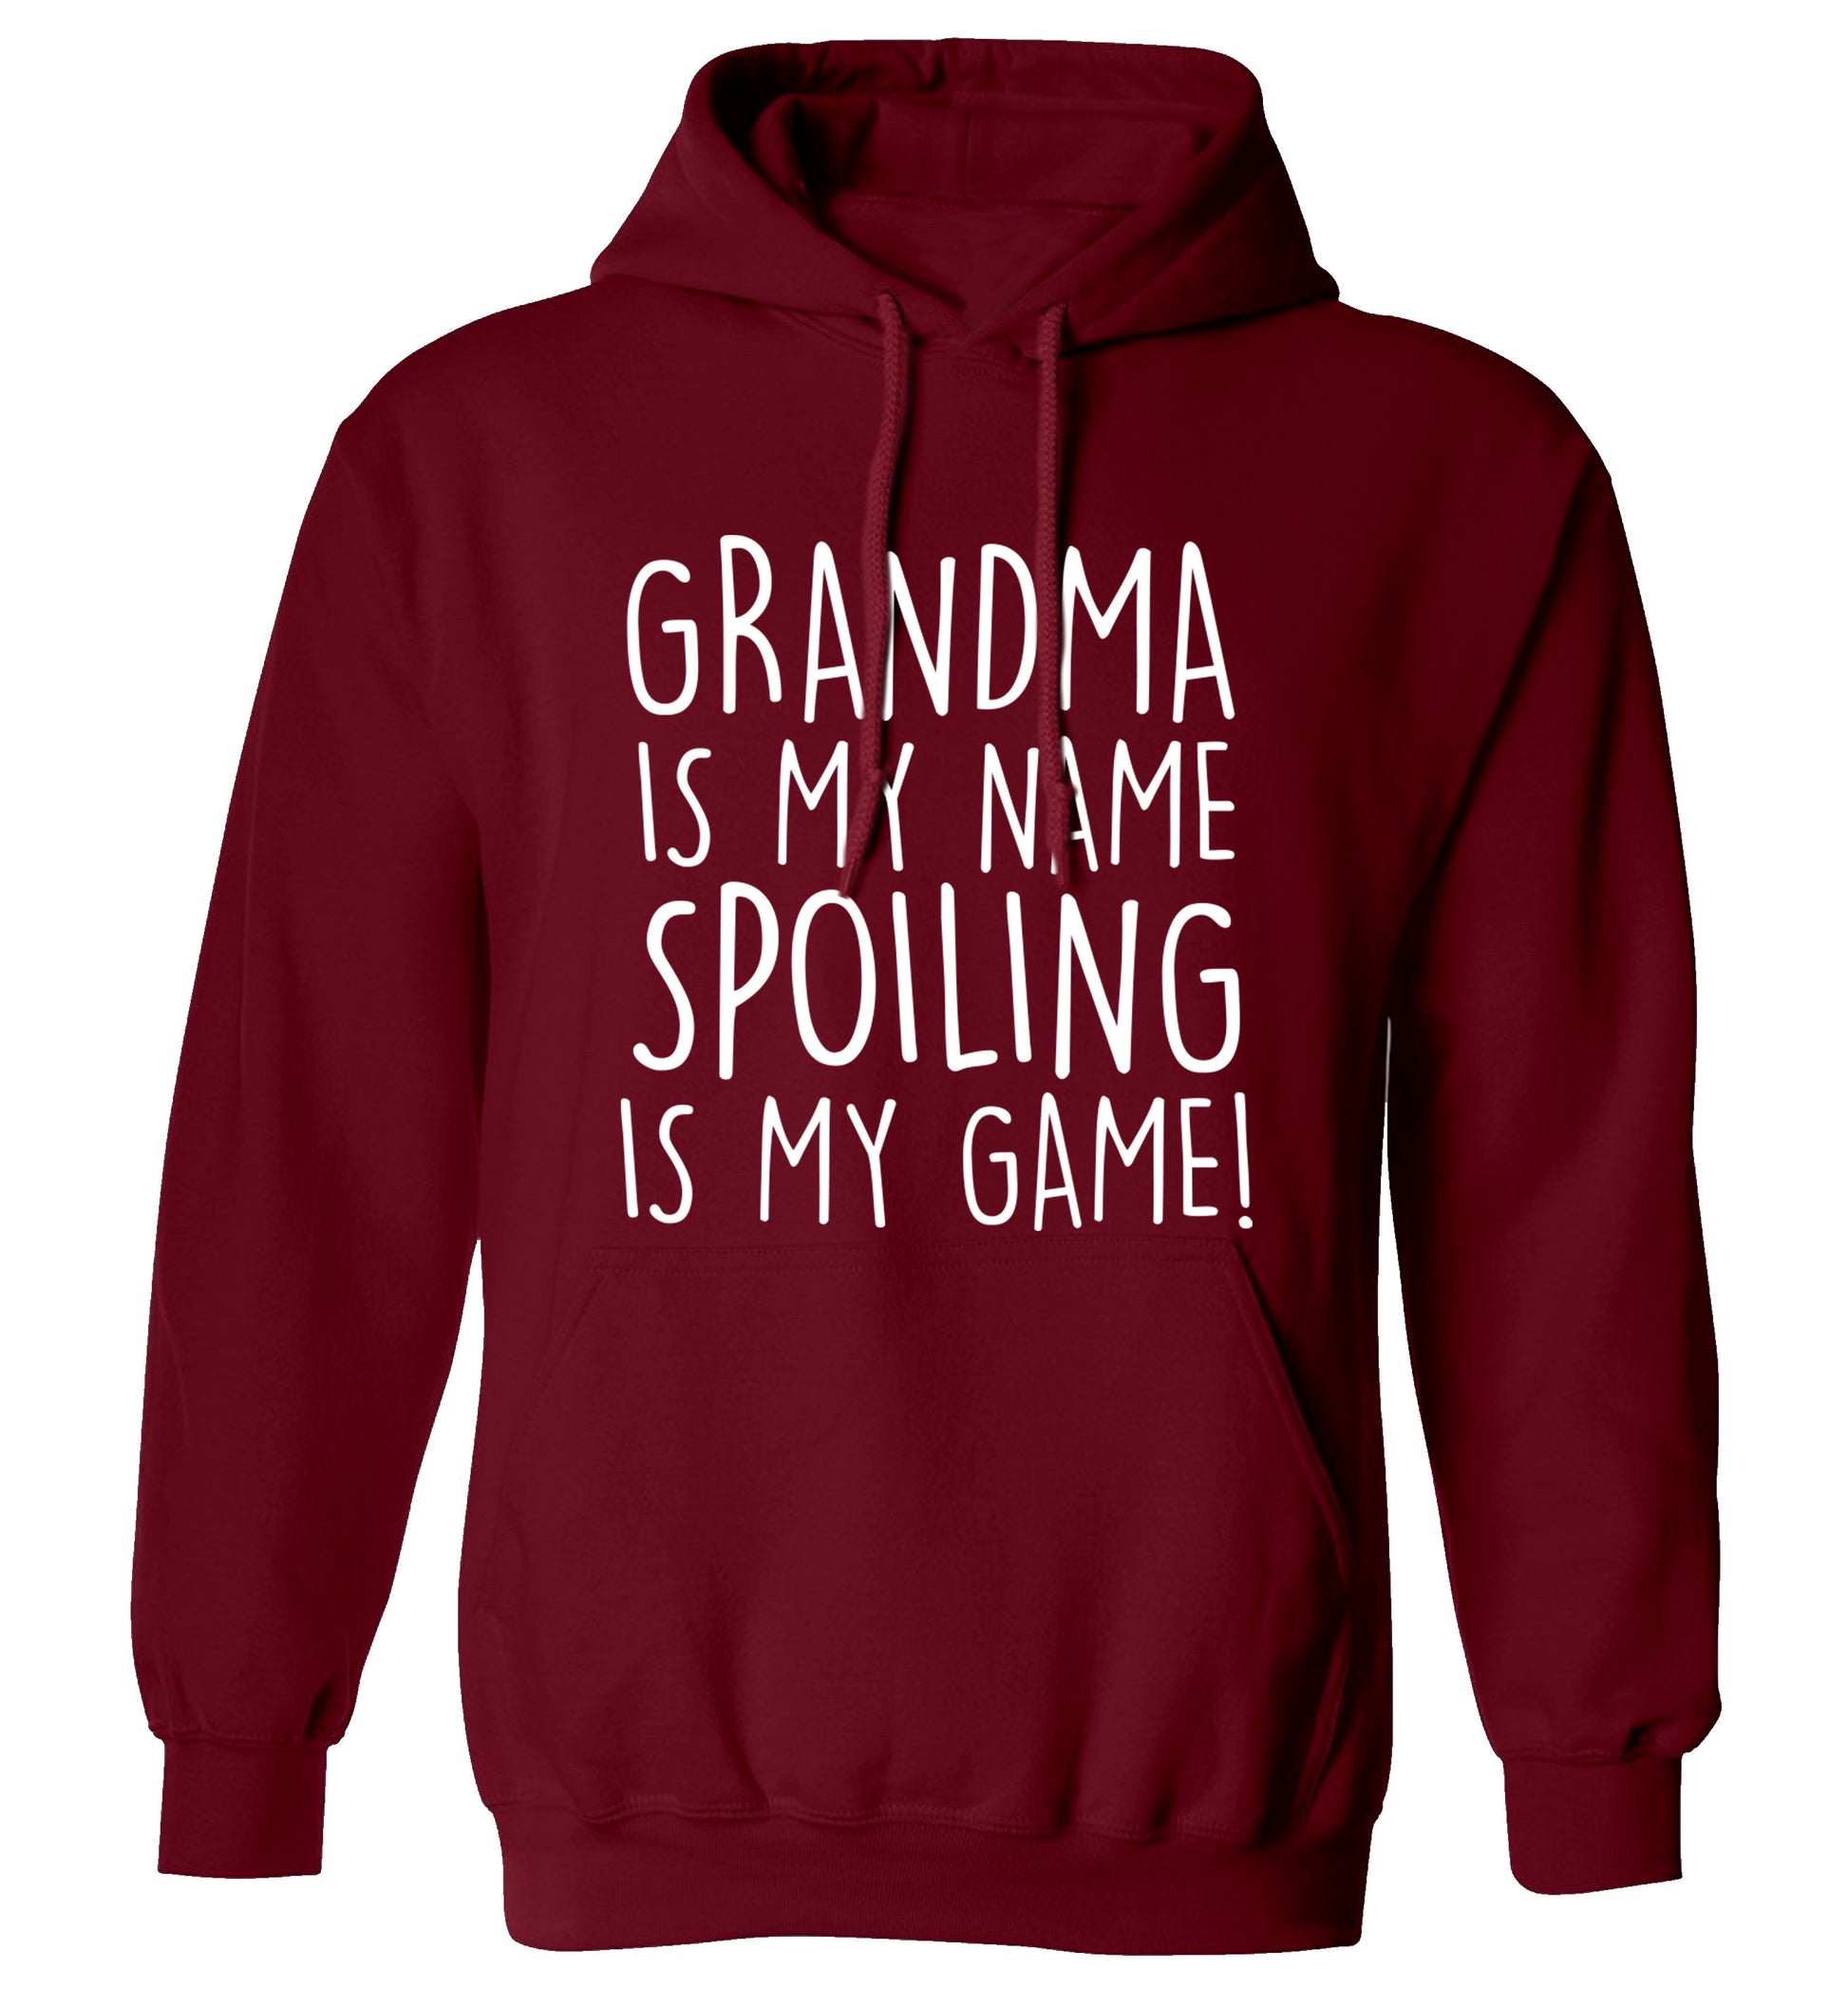 Grandma is my name, spoiling is my game adults unisex maroon hoodie 2XL